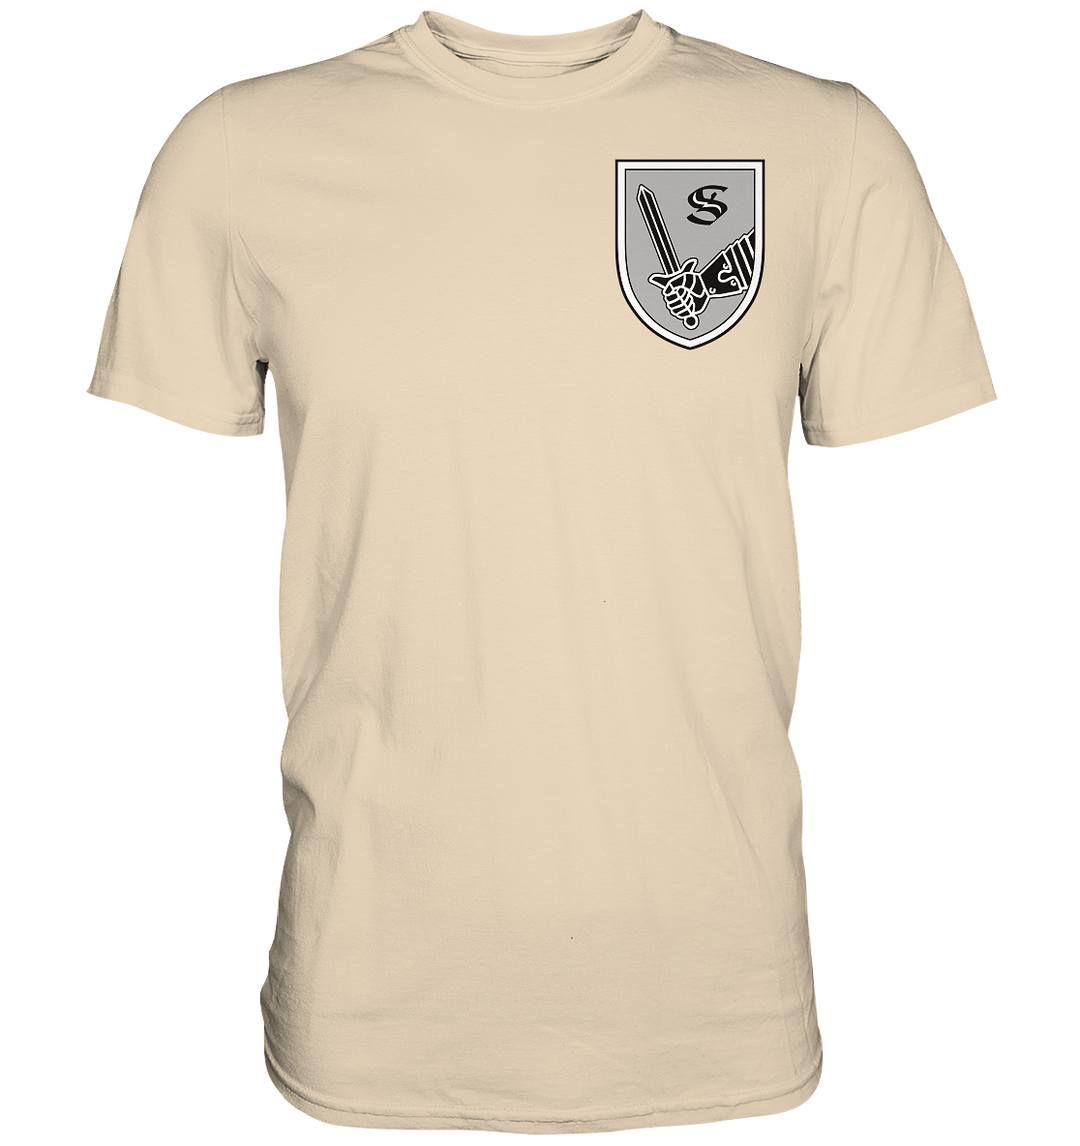 "Ausbildungsbereich Panzertruppen" - Premium Shirt